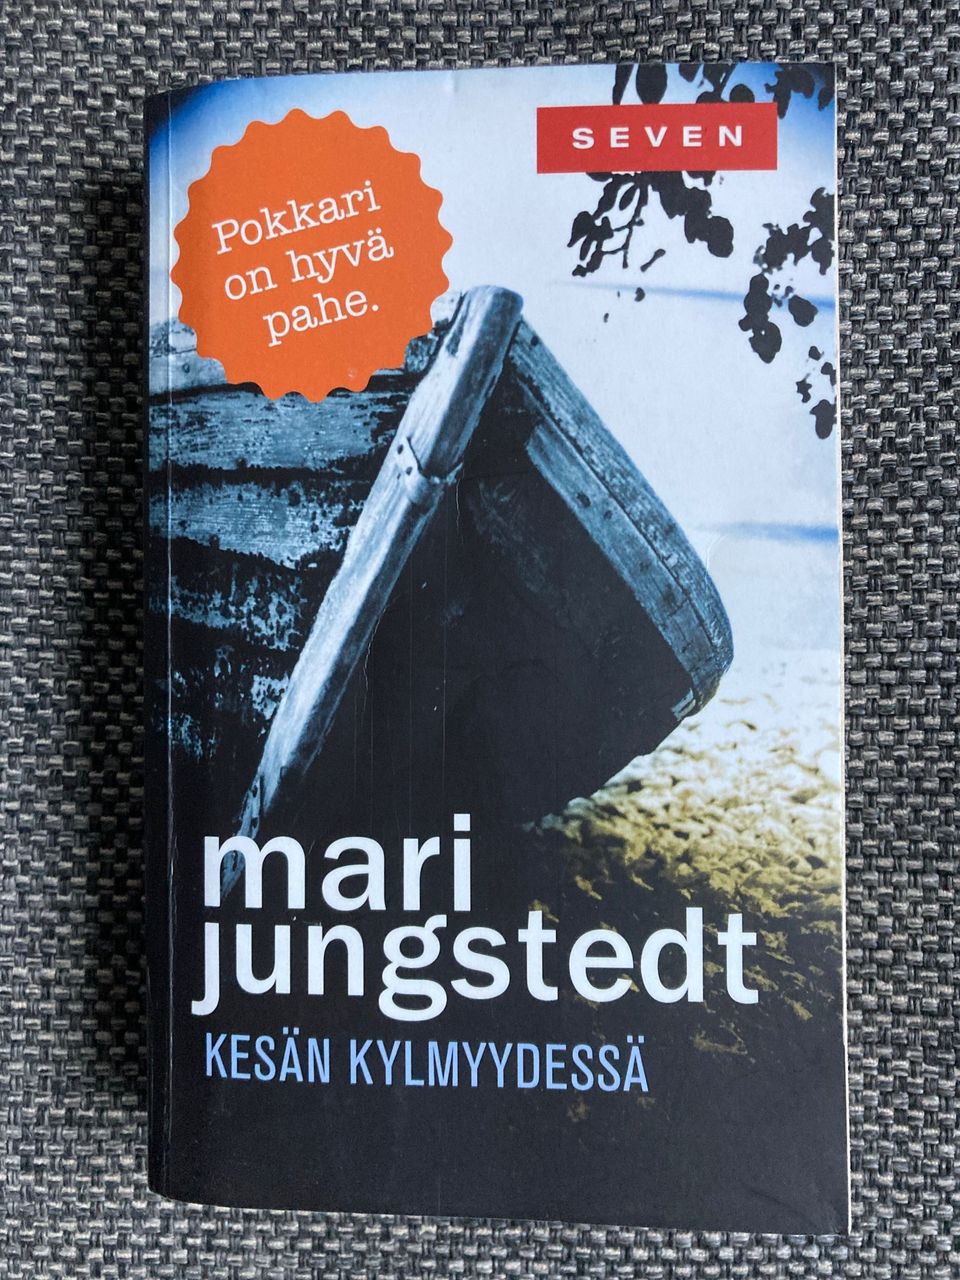 Kirja, Jungstedt: Kesän kylmyydessä, vaikka lahjaksi